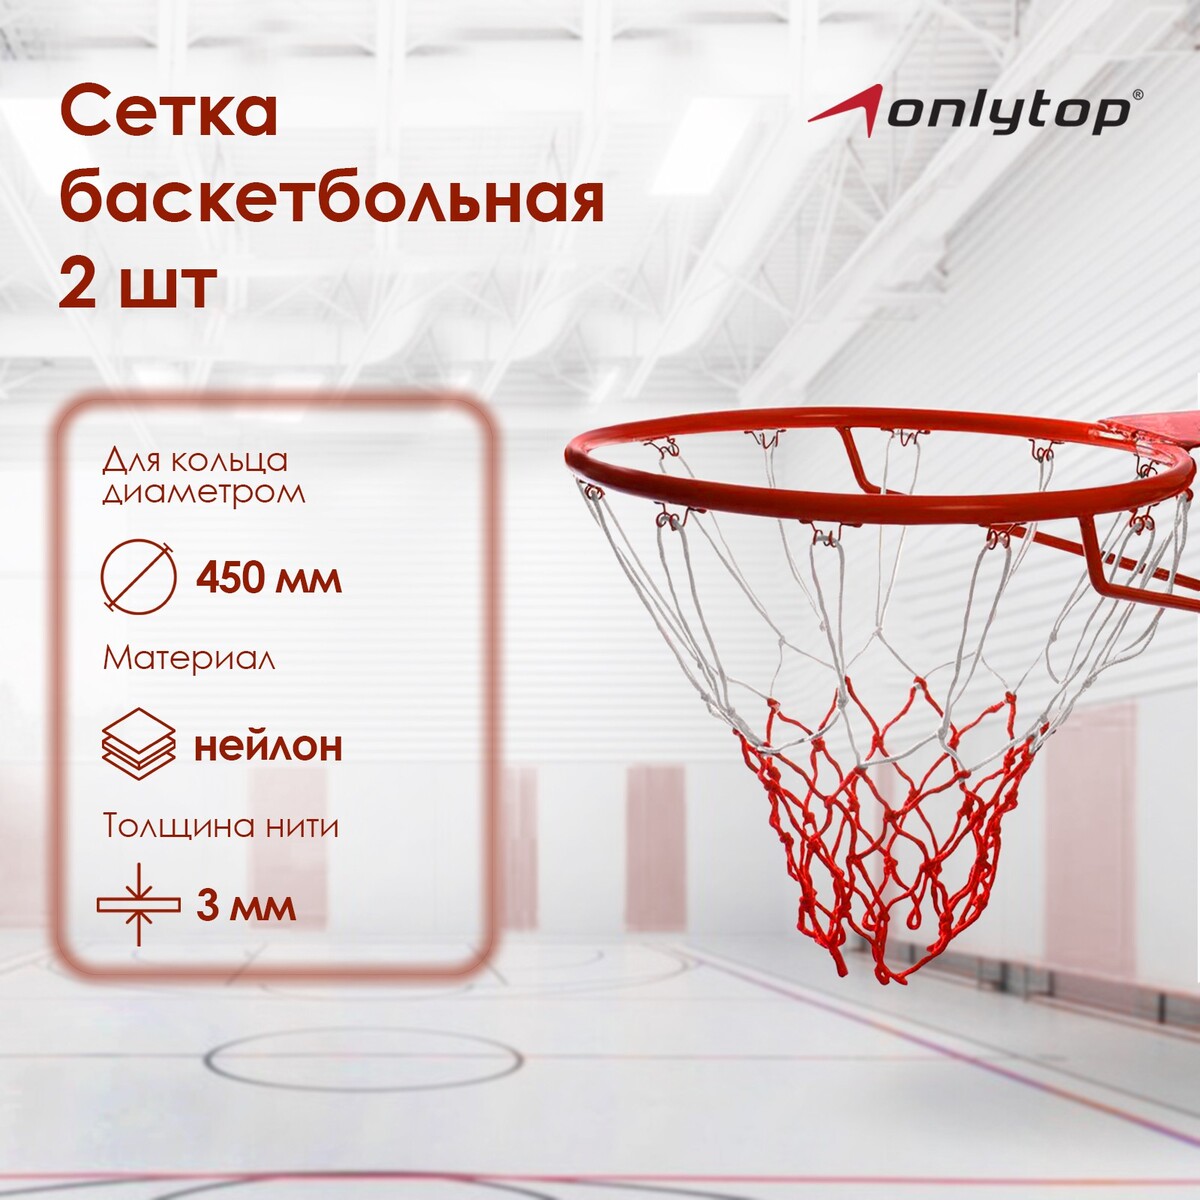 Сетка баскетбольная onlytop, 50 см, нить 3 мм, 2 шт. сетка для переноски мячей onlytop на 6 мячей нить 3 мм